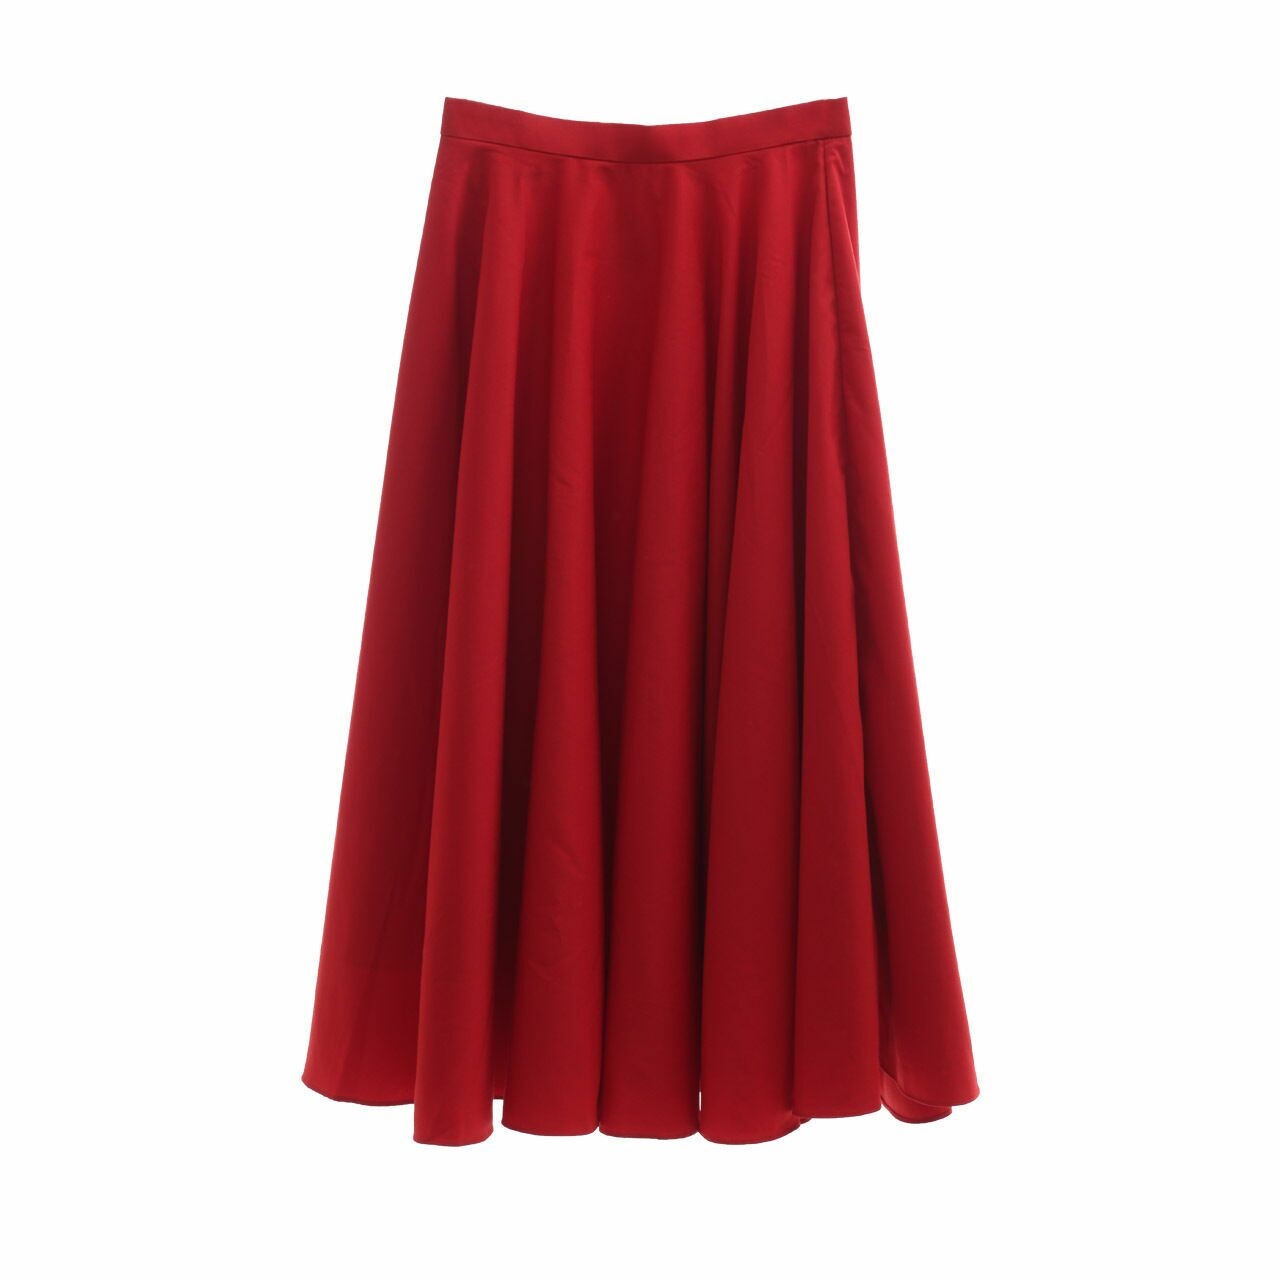 Hellopupu Red Midi Skirt